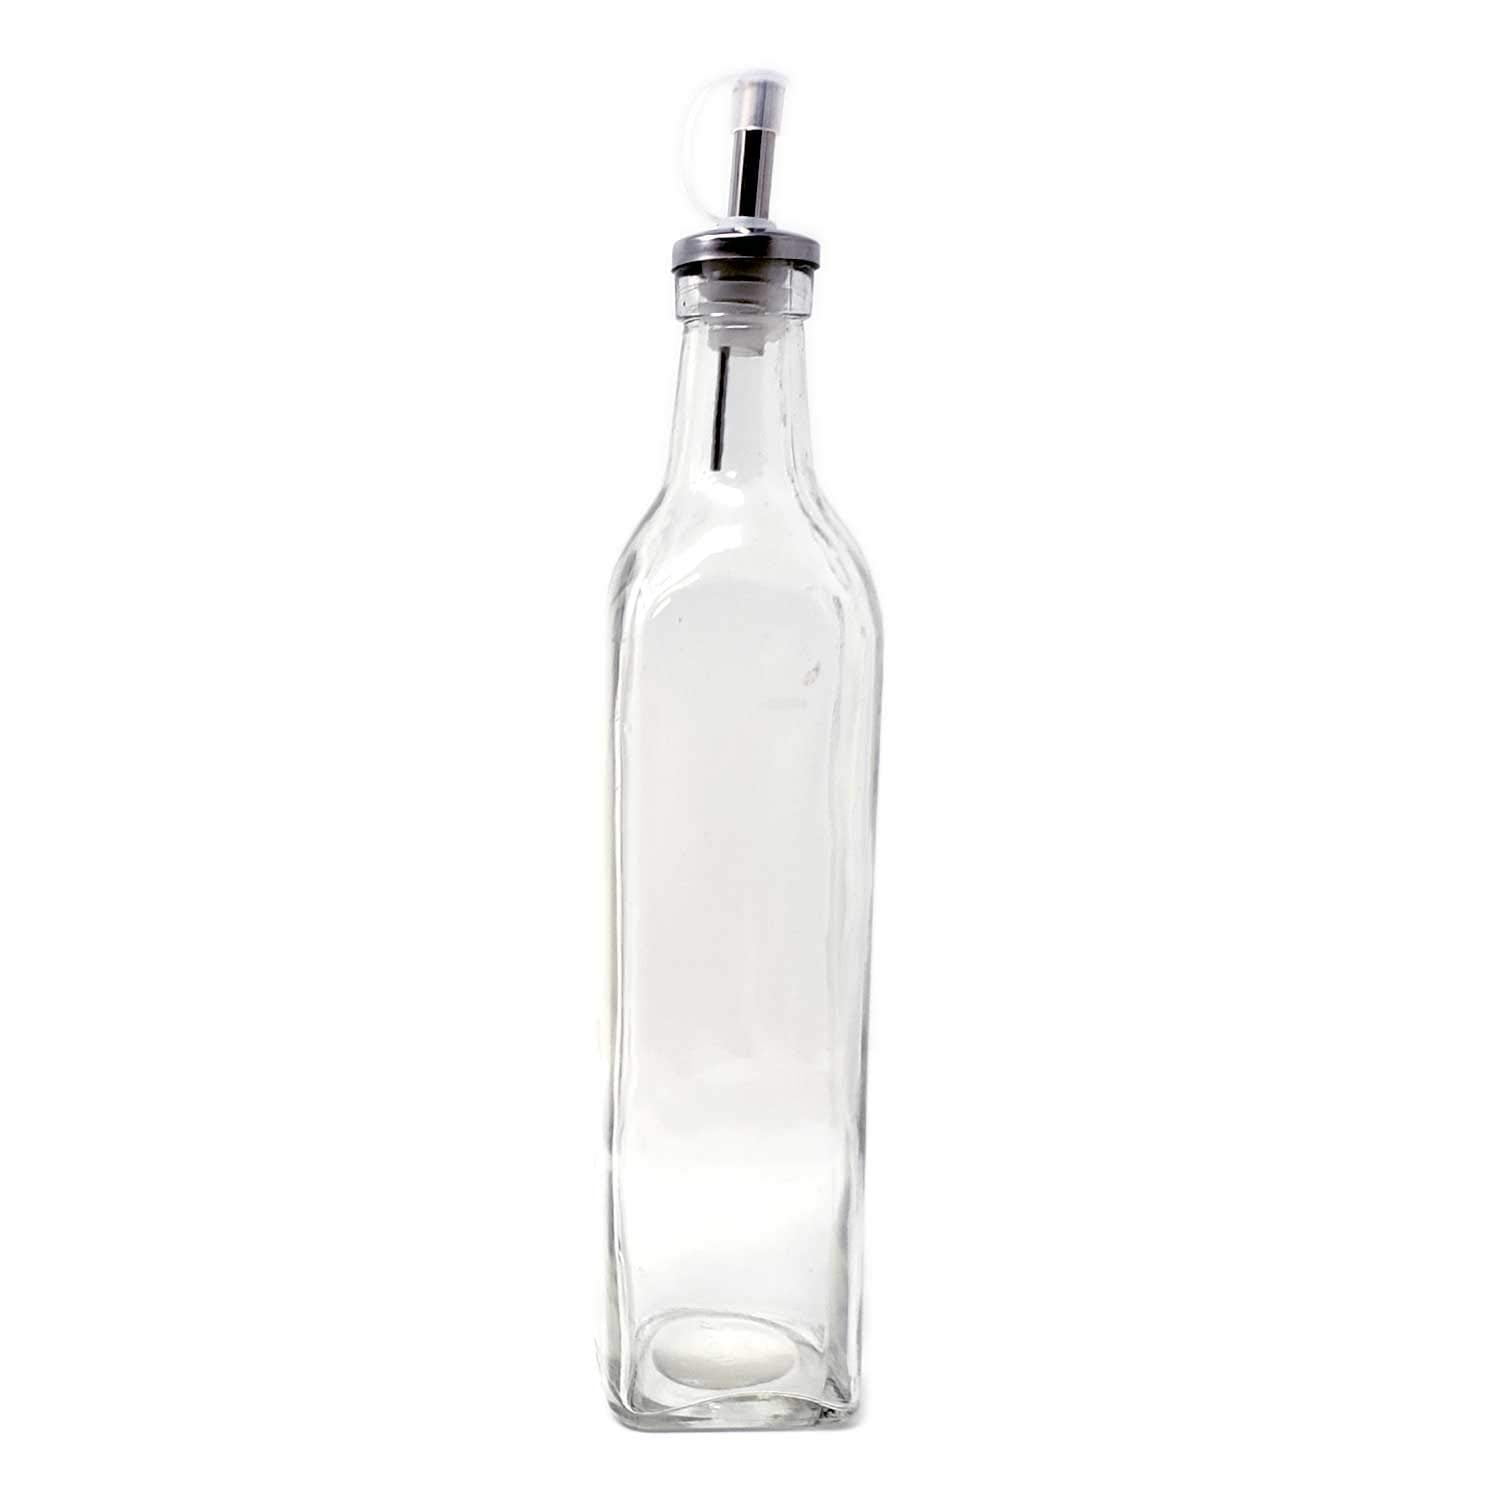 Olive Oil Dispenser Bottle Sauce & Vinegar Cruet Set w/ Pourers & Funnel  Modern